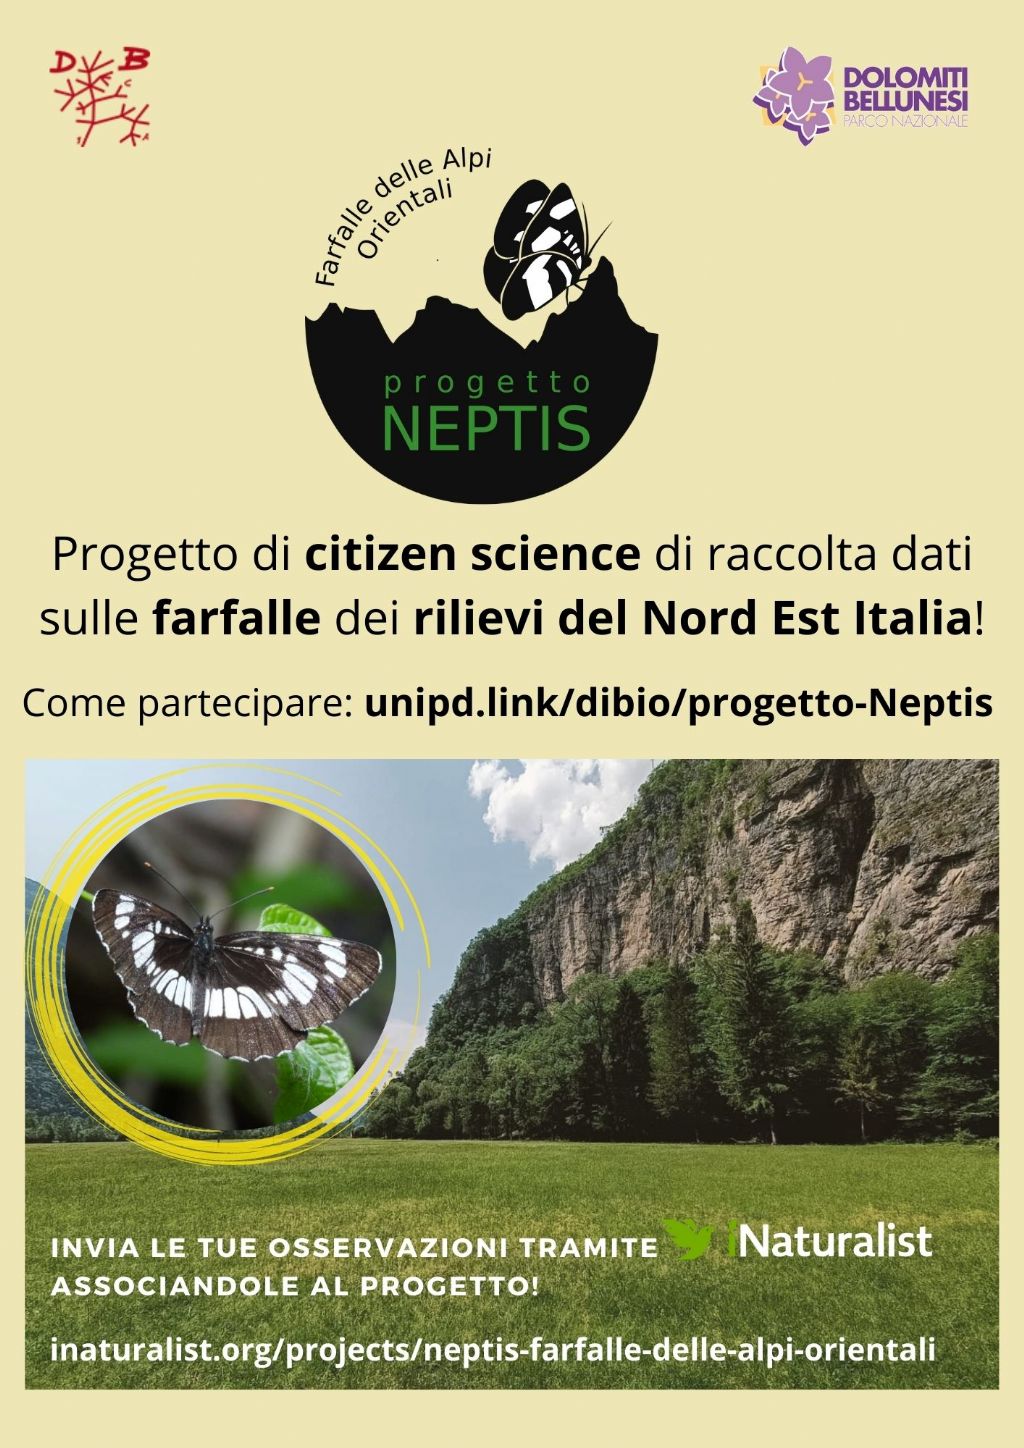 Progetto citizen science: Farfalle delle Alpi Orientali